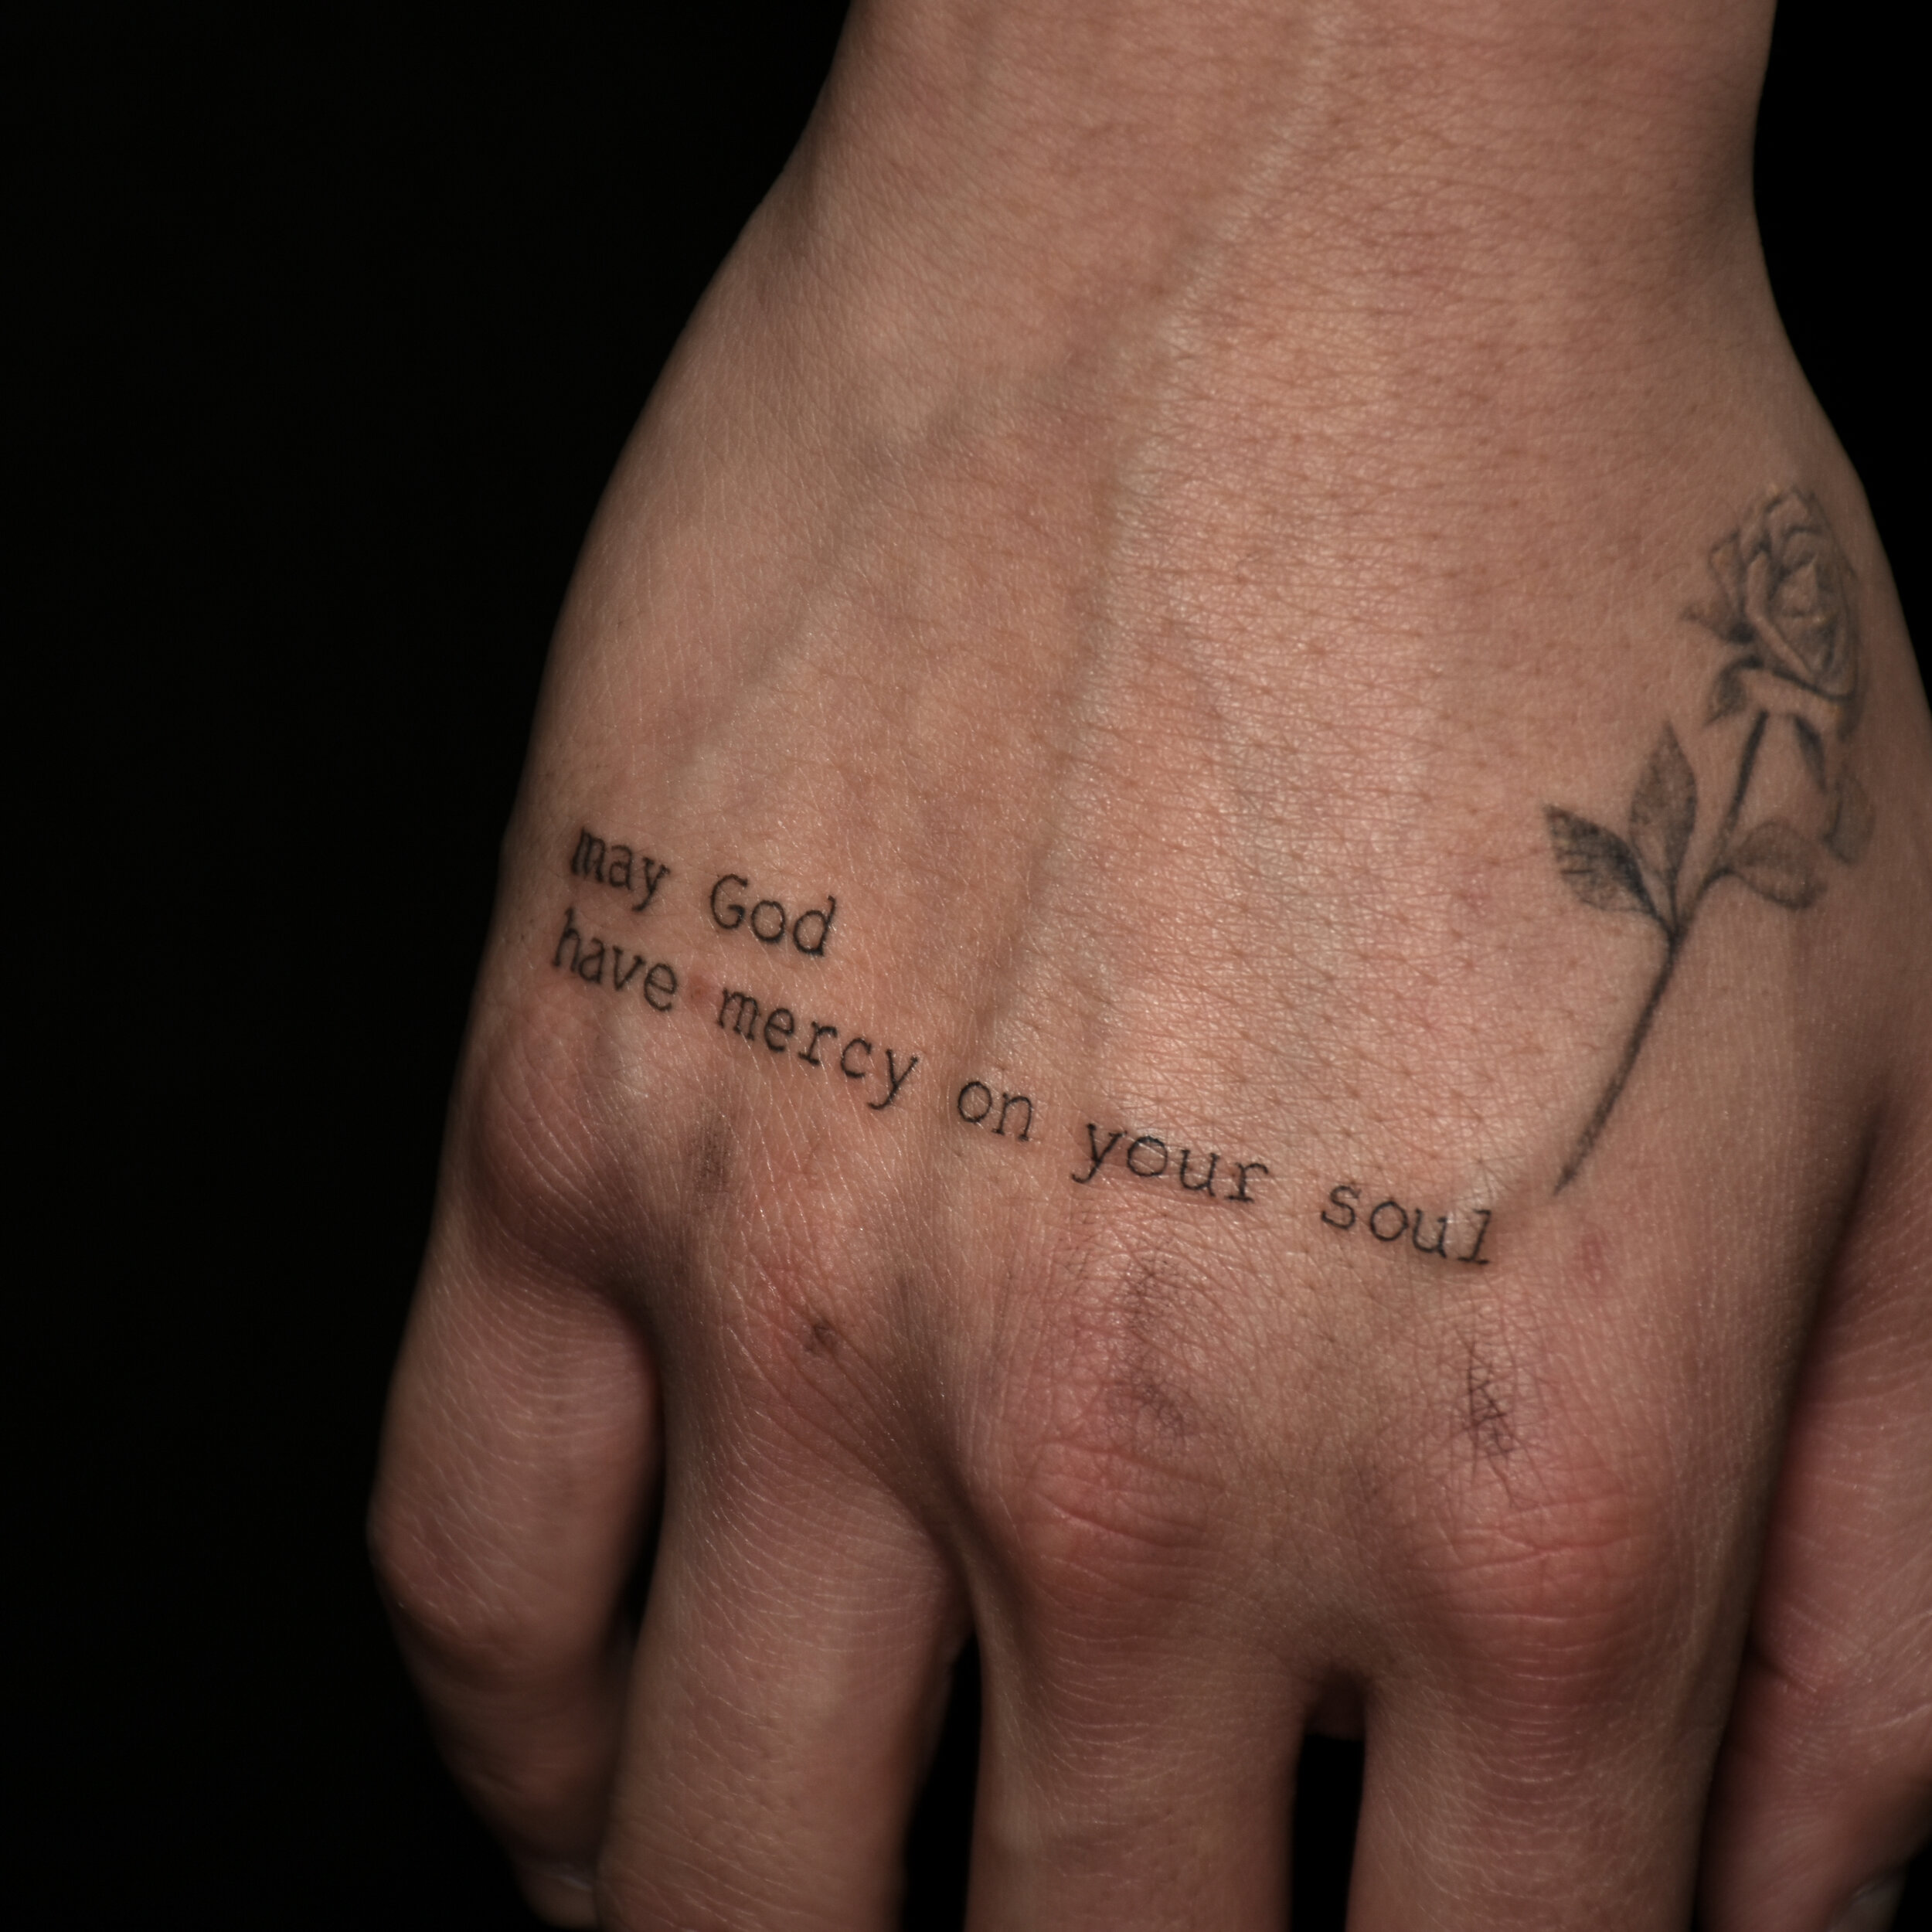 Script tattoo by Katt